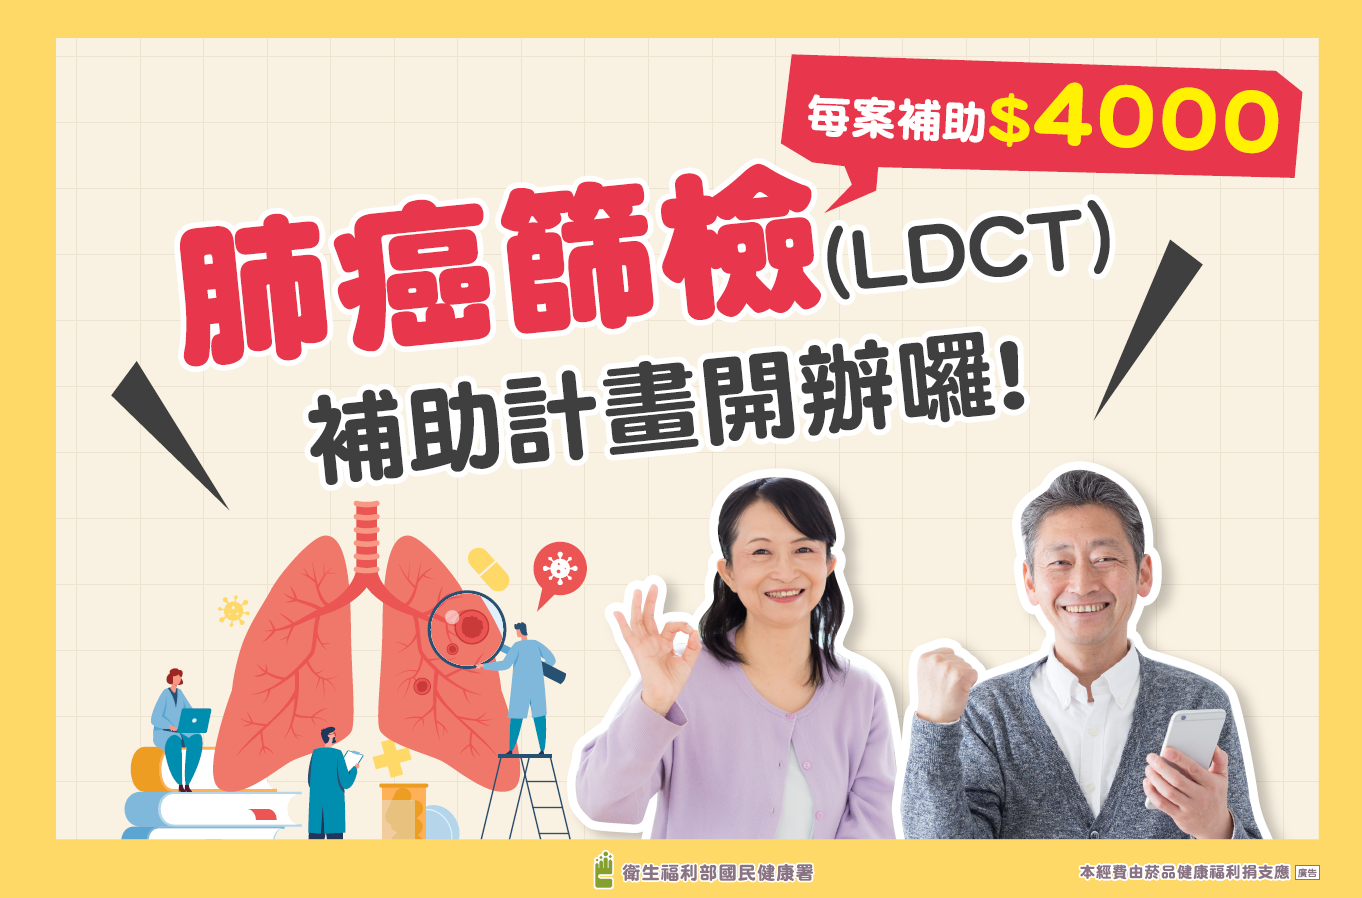 「肺癌篩檢(LDCT)補助計畫開辦囉！」懶人包文章照片